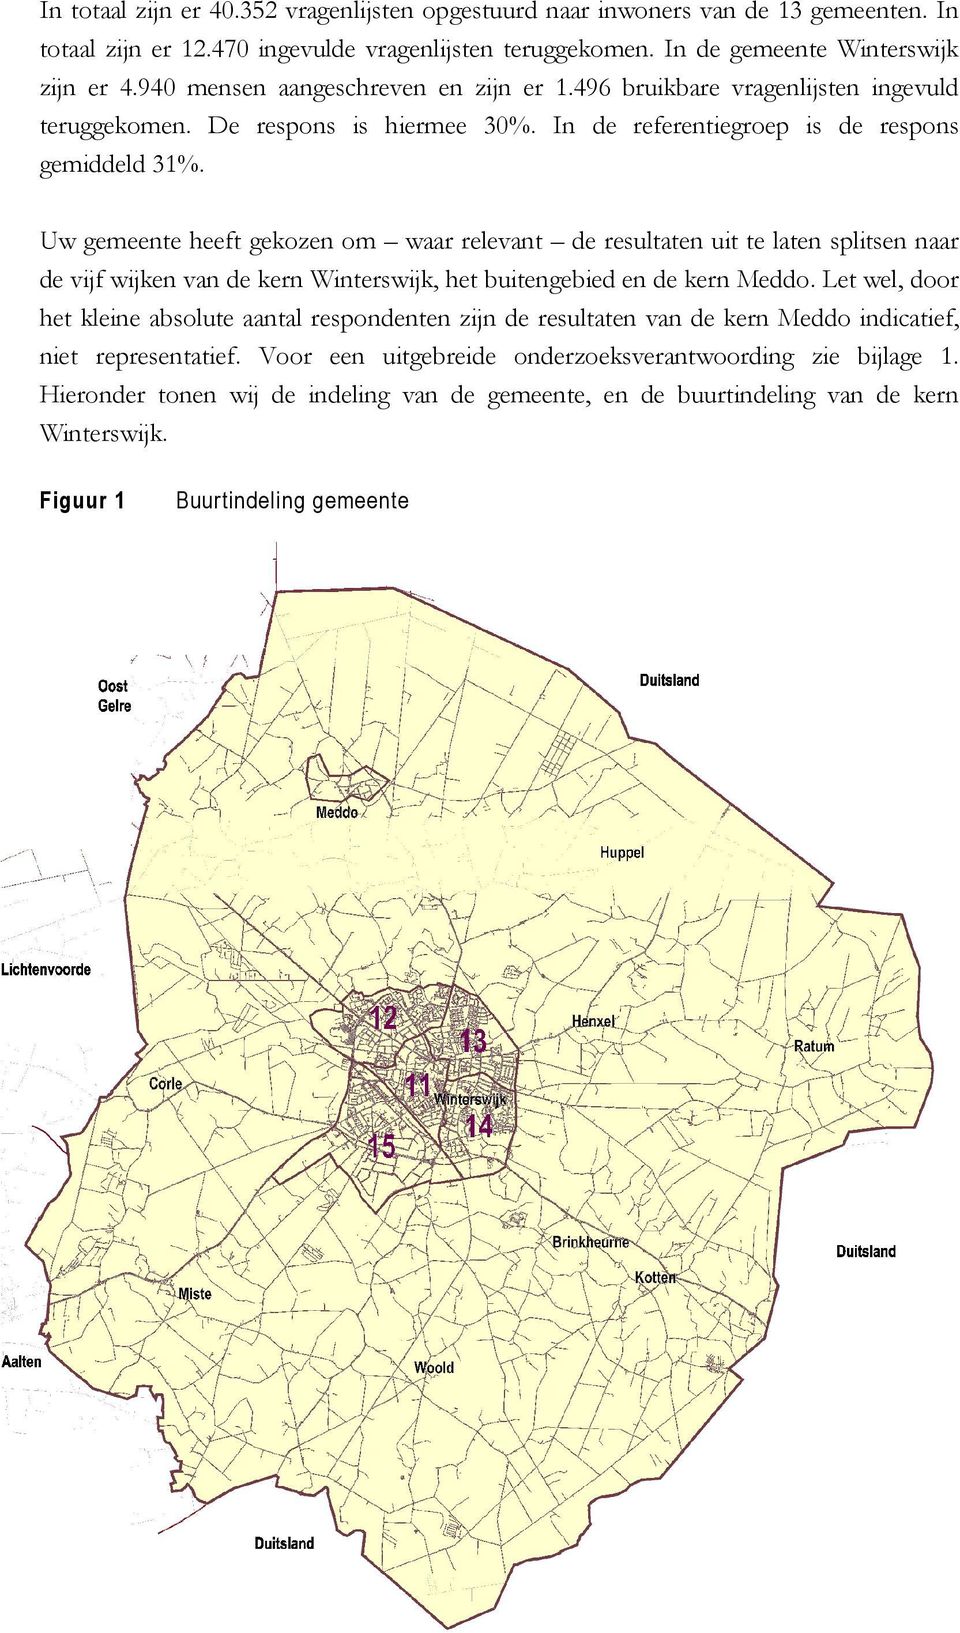 Uw gemeente heeft gekozen om waar relevant de resultaten uit te laten splitsen naar de vijf wijken van de kern Winterswijk, het buitengebied en de kern Meddo.